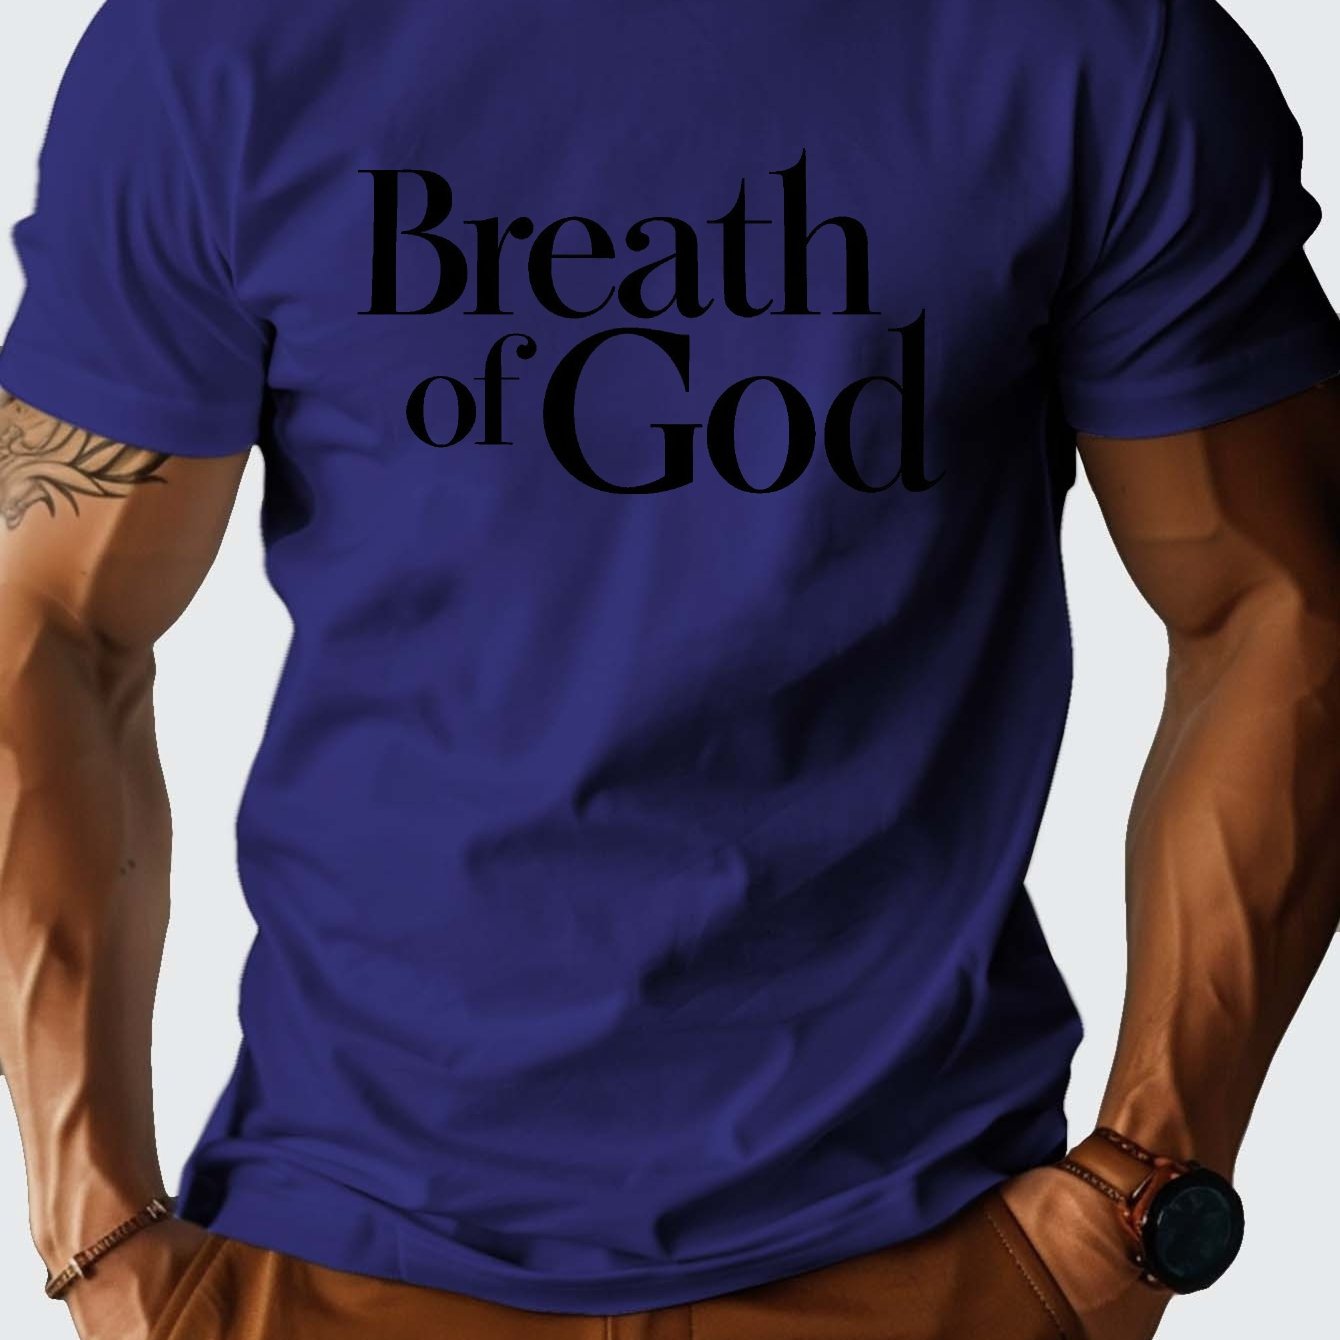 Breath of God Men's Christian T-shirt claimedbygoddesigns